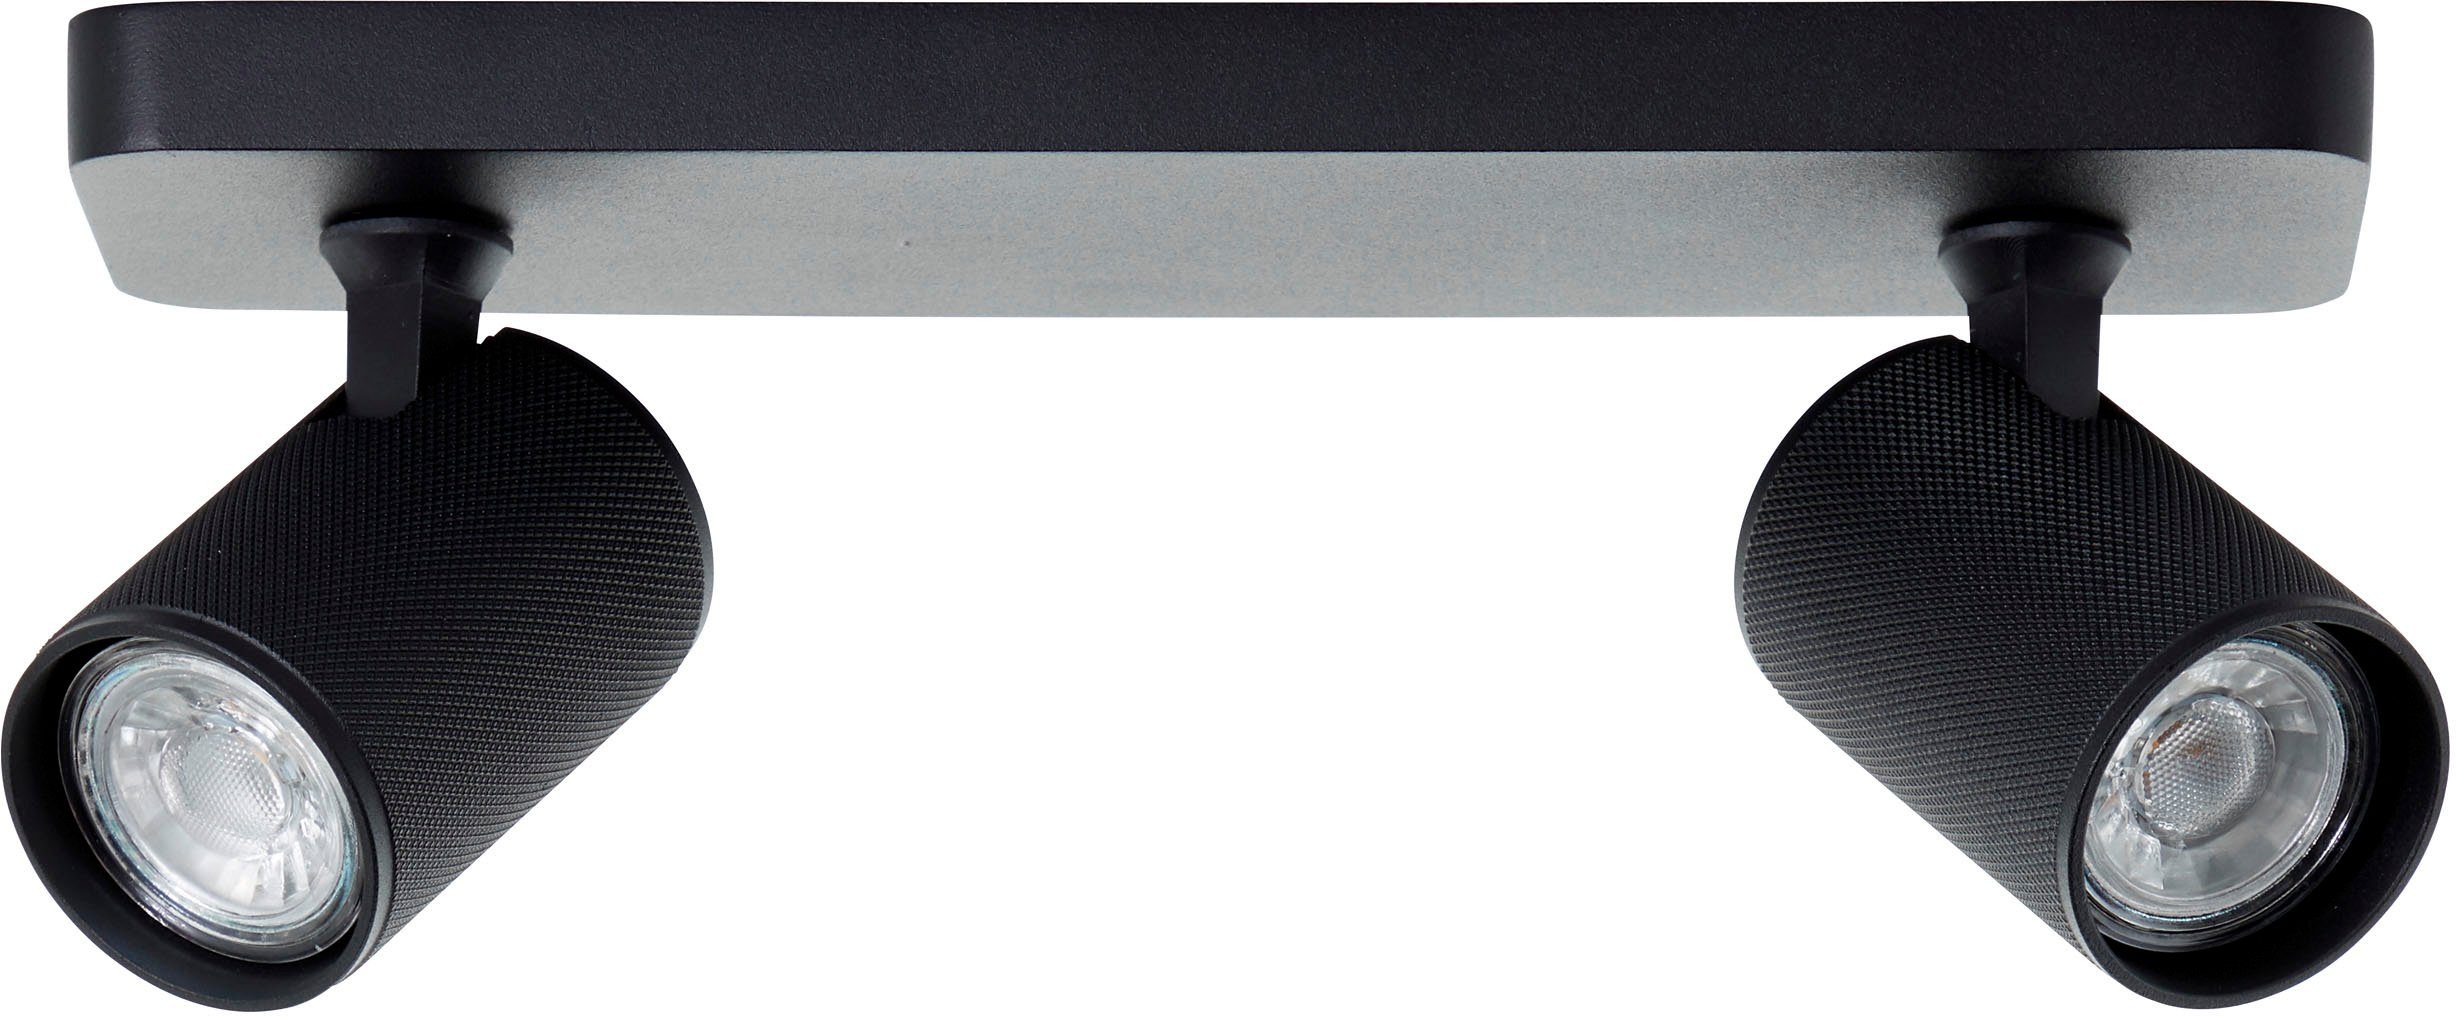 Brilliant Deckenstrahler Spotbalken cm, GU10, 3000K, LED 345lm, 12x31x9 Metall, schwarz schwenkbar, Marty, wechselbar, Warmweiß